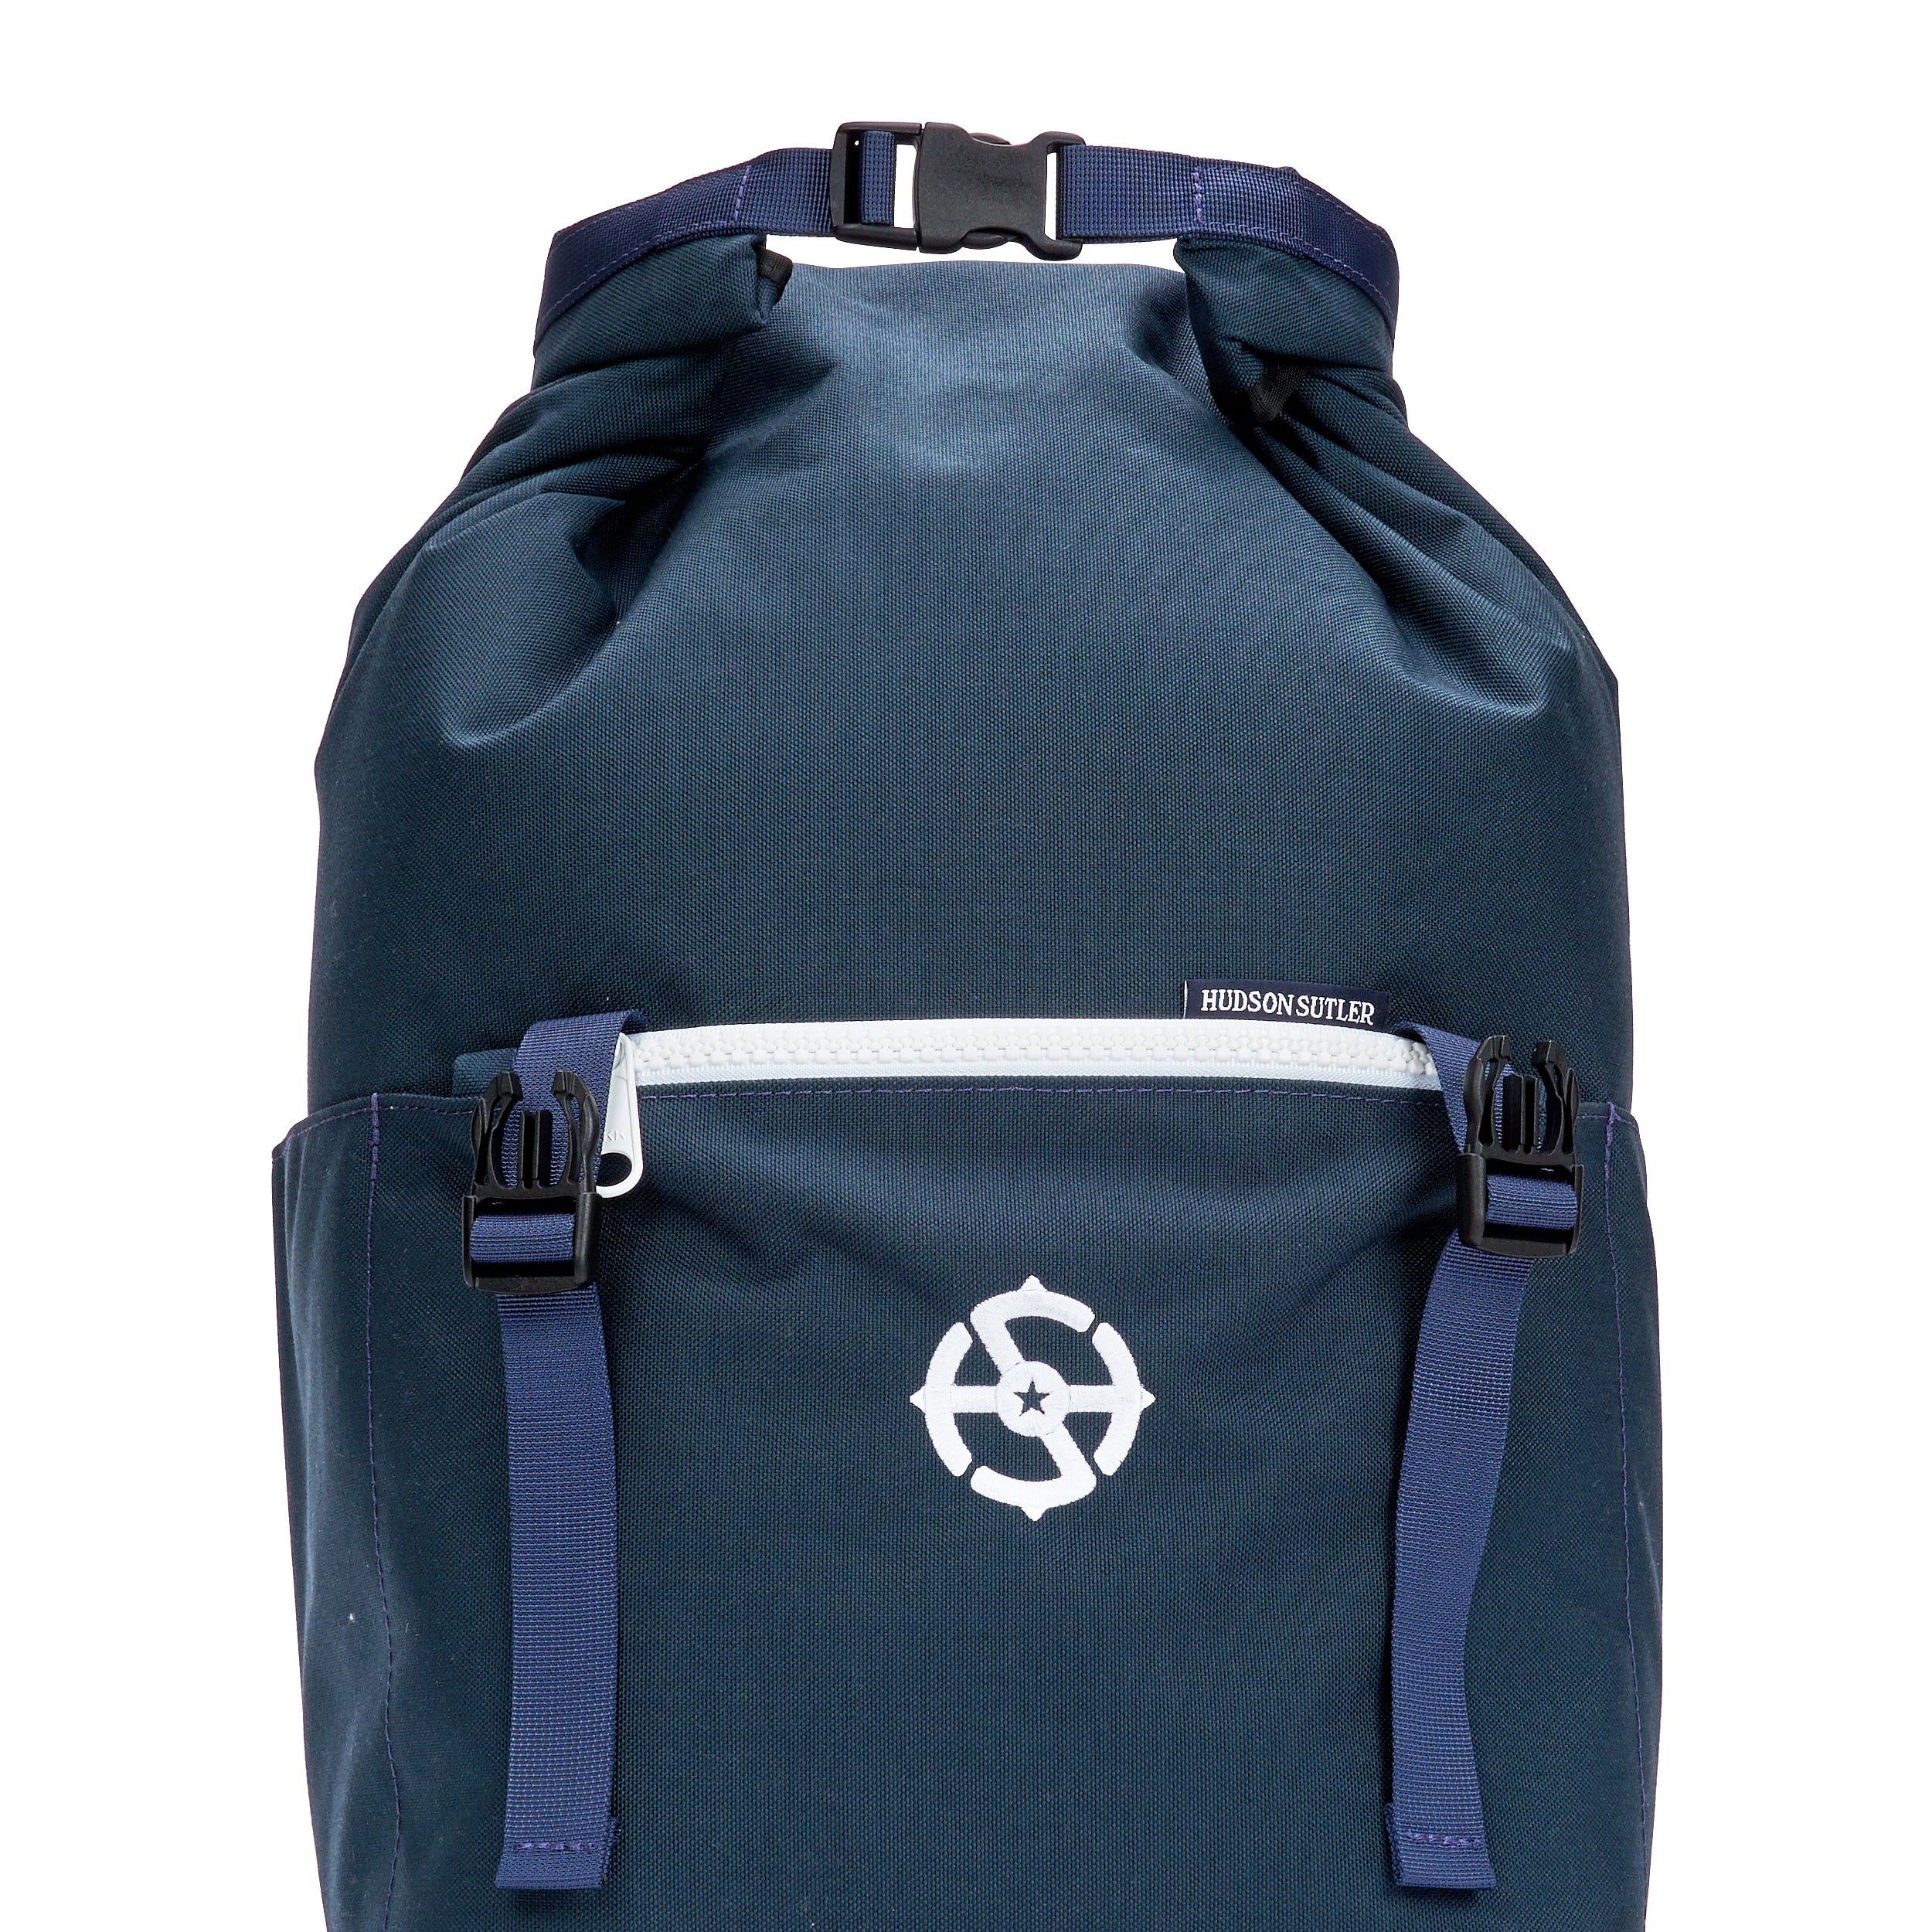 Cooler Backpack by Hudson Sutler